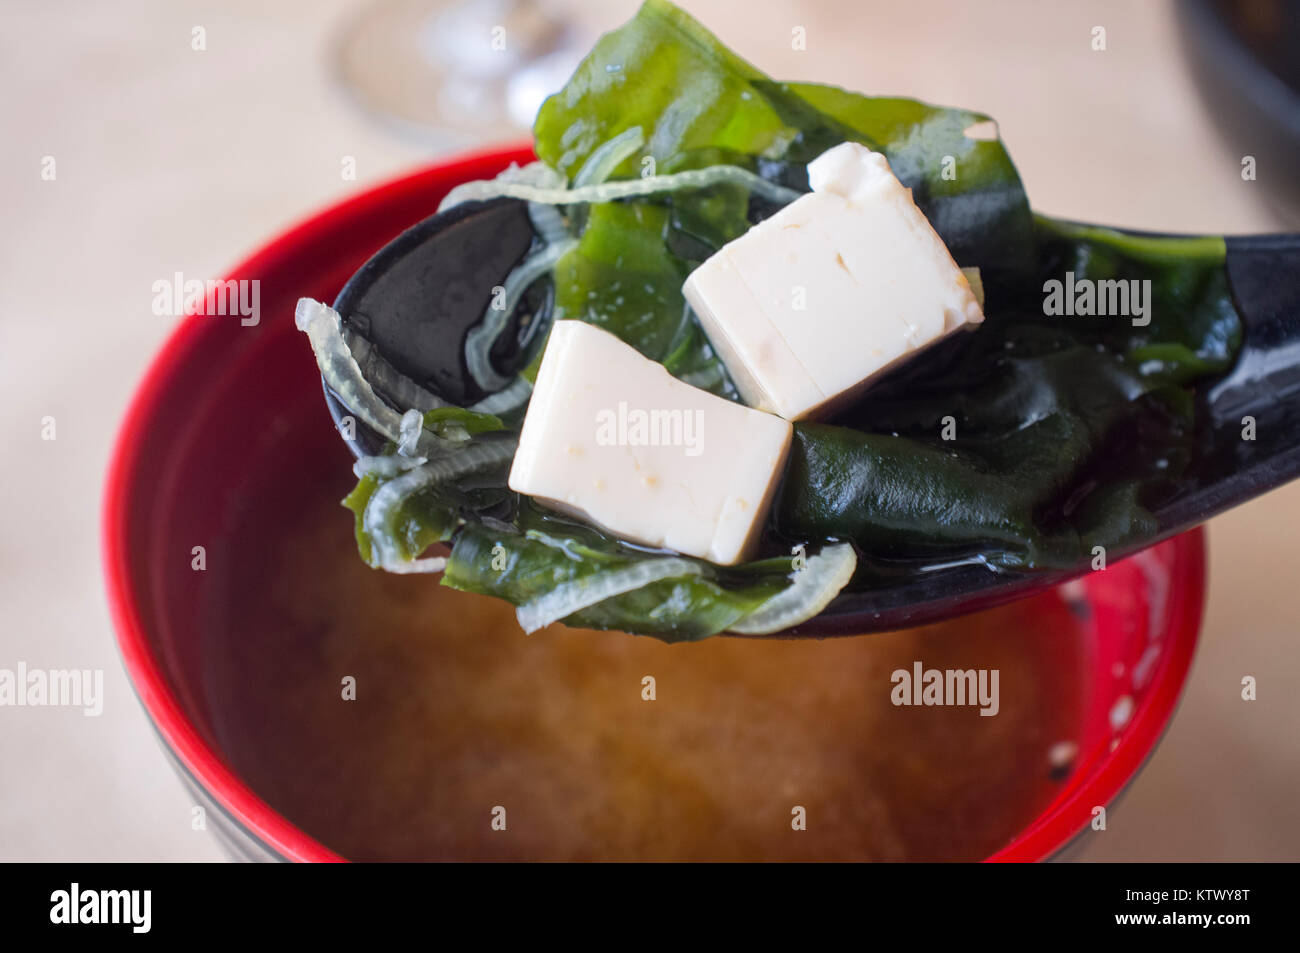 La soupe miso japonaise avec le tofu et les algues. Cuillerée d'argile libre avec deux morceaux de tofu Banque D'Images